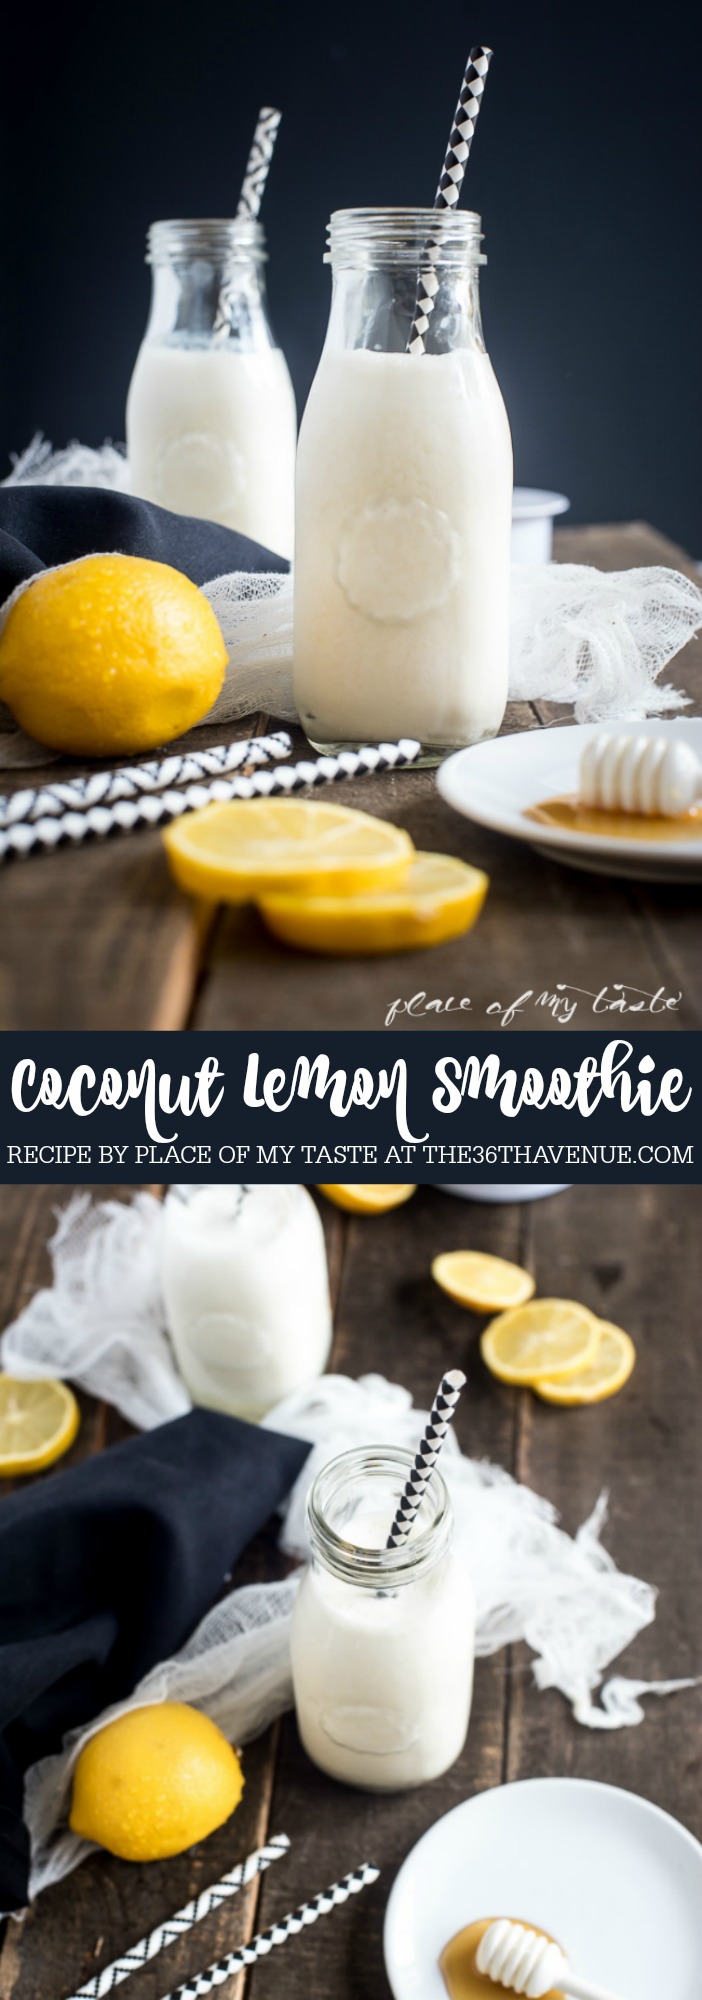 Coconut Lemon Smoothie at the36thavenue.com